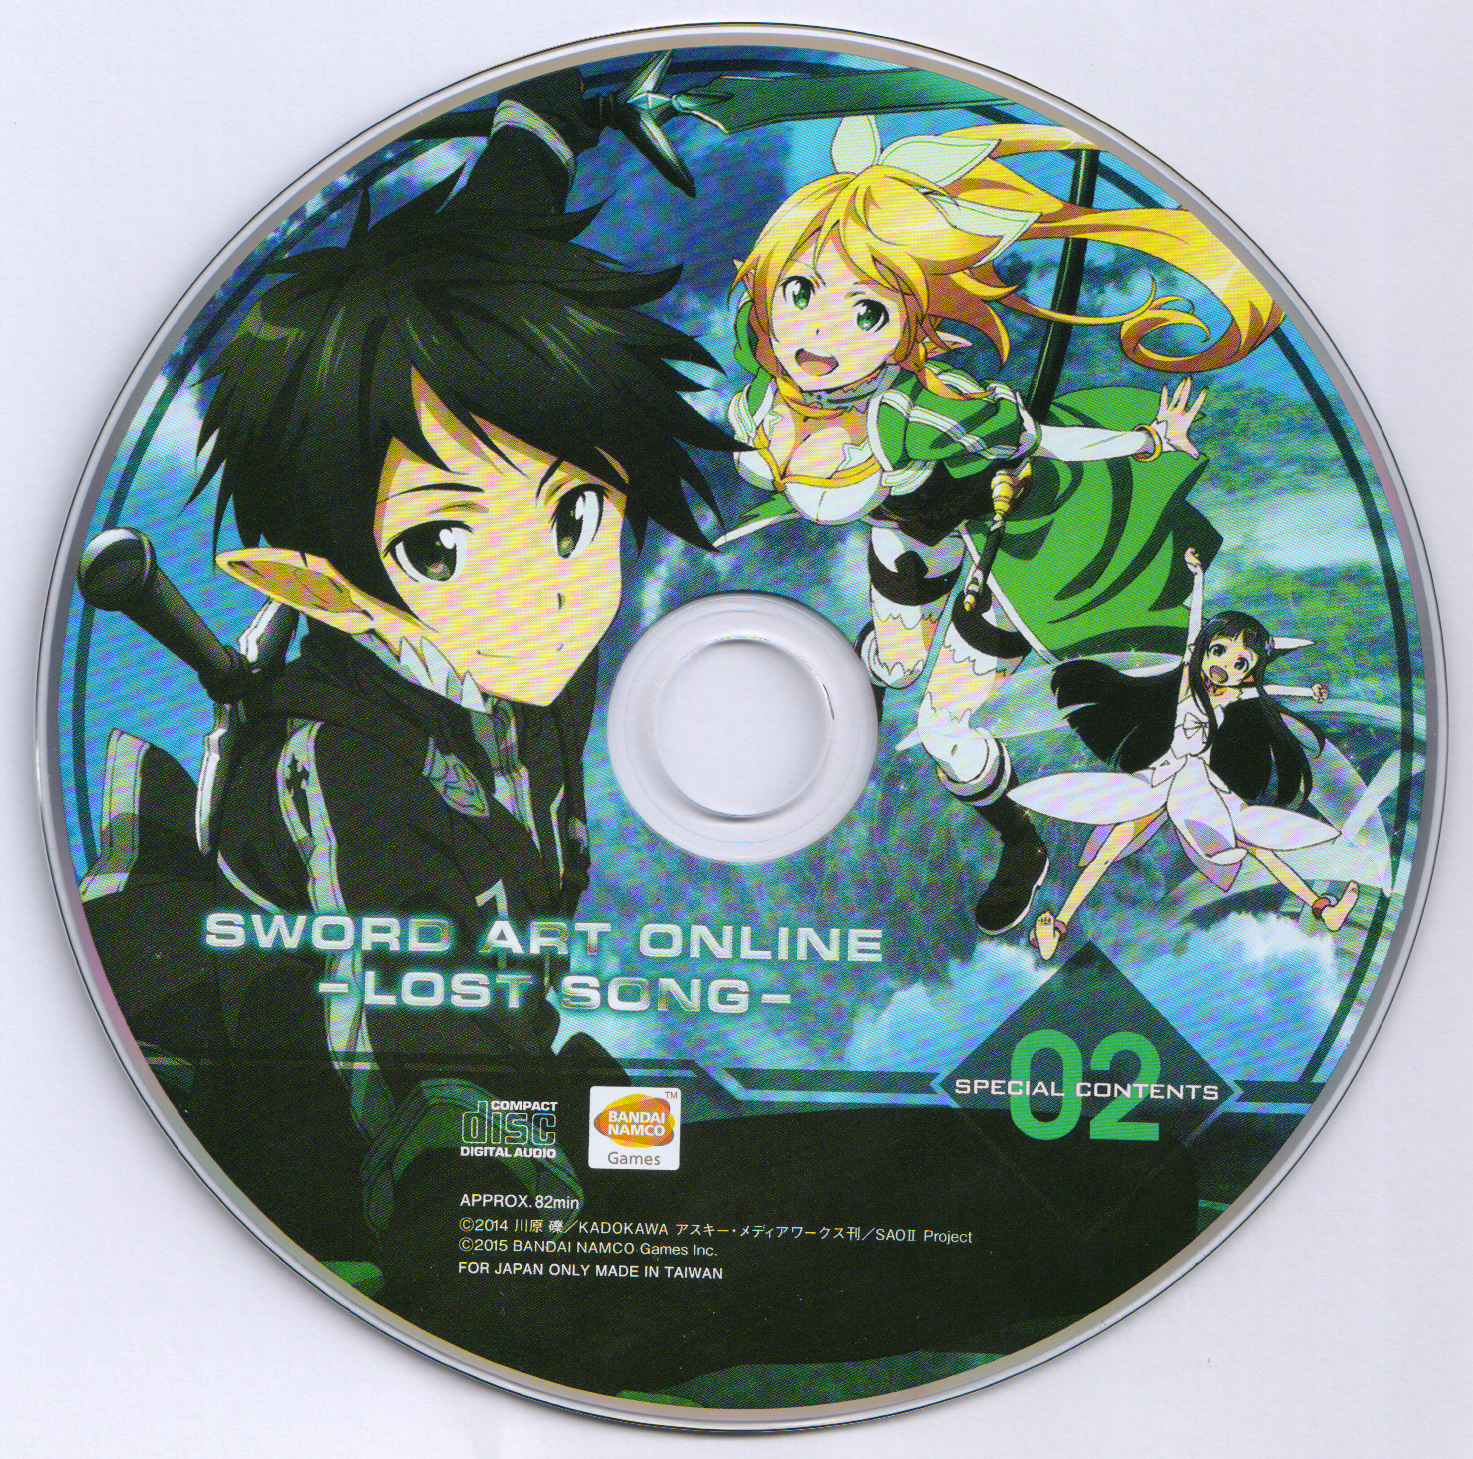 Sword Art Online II Original Soundtrack vol.2, Sword Art Online Wiki